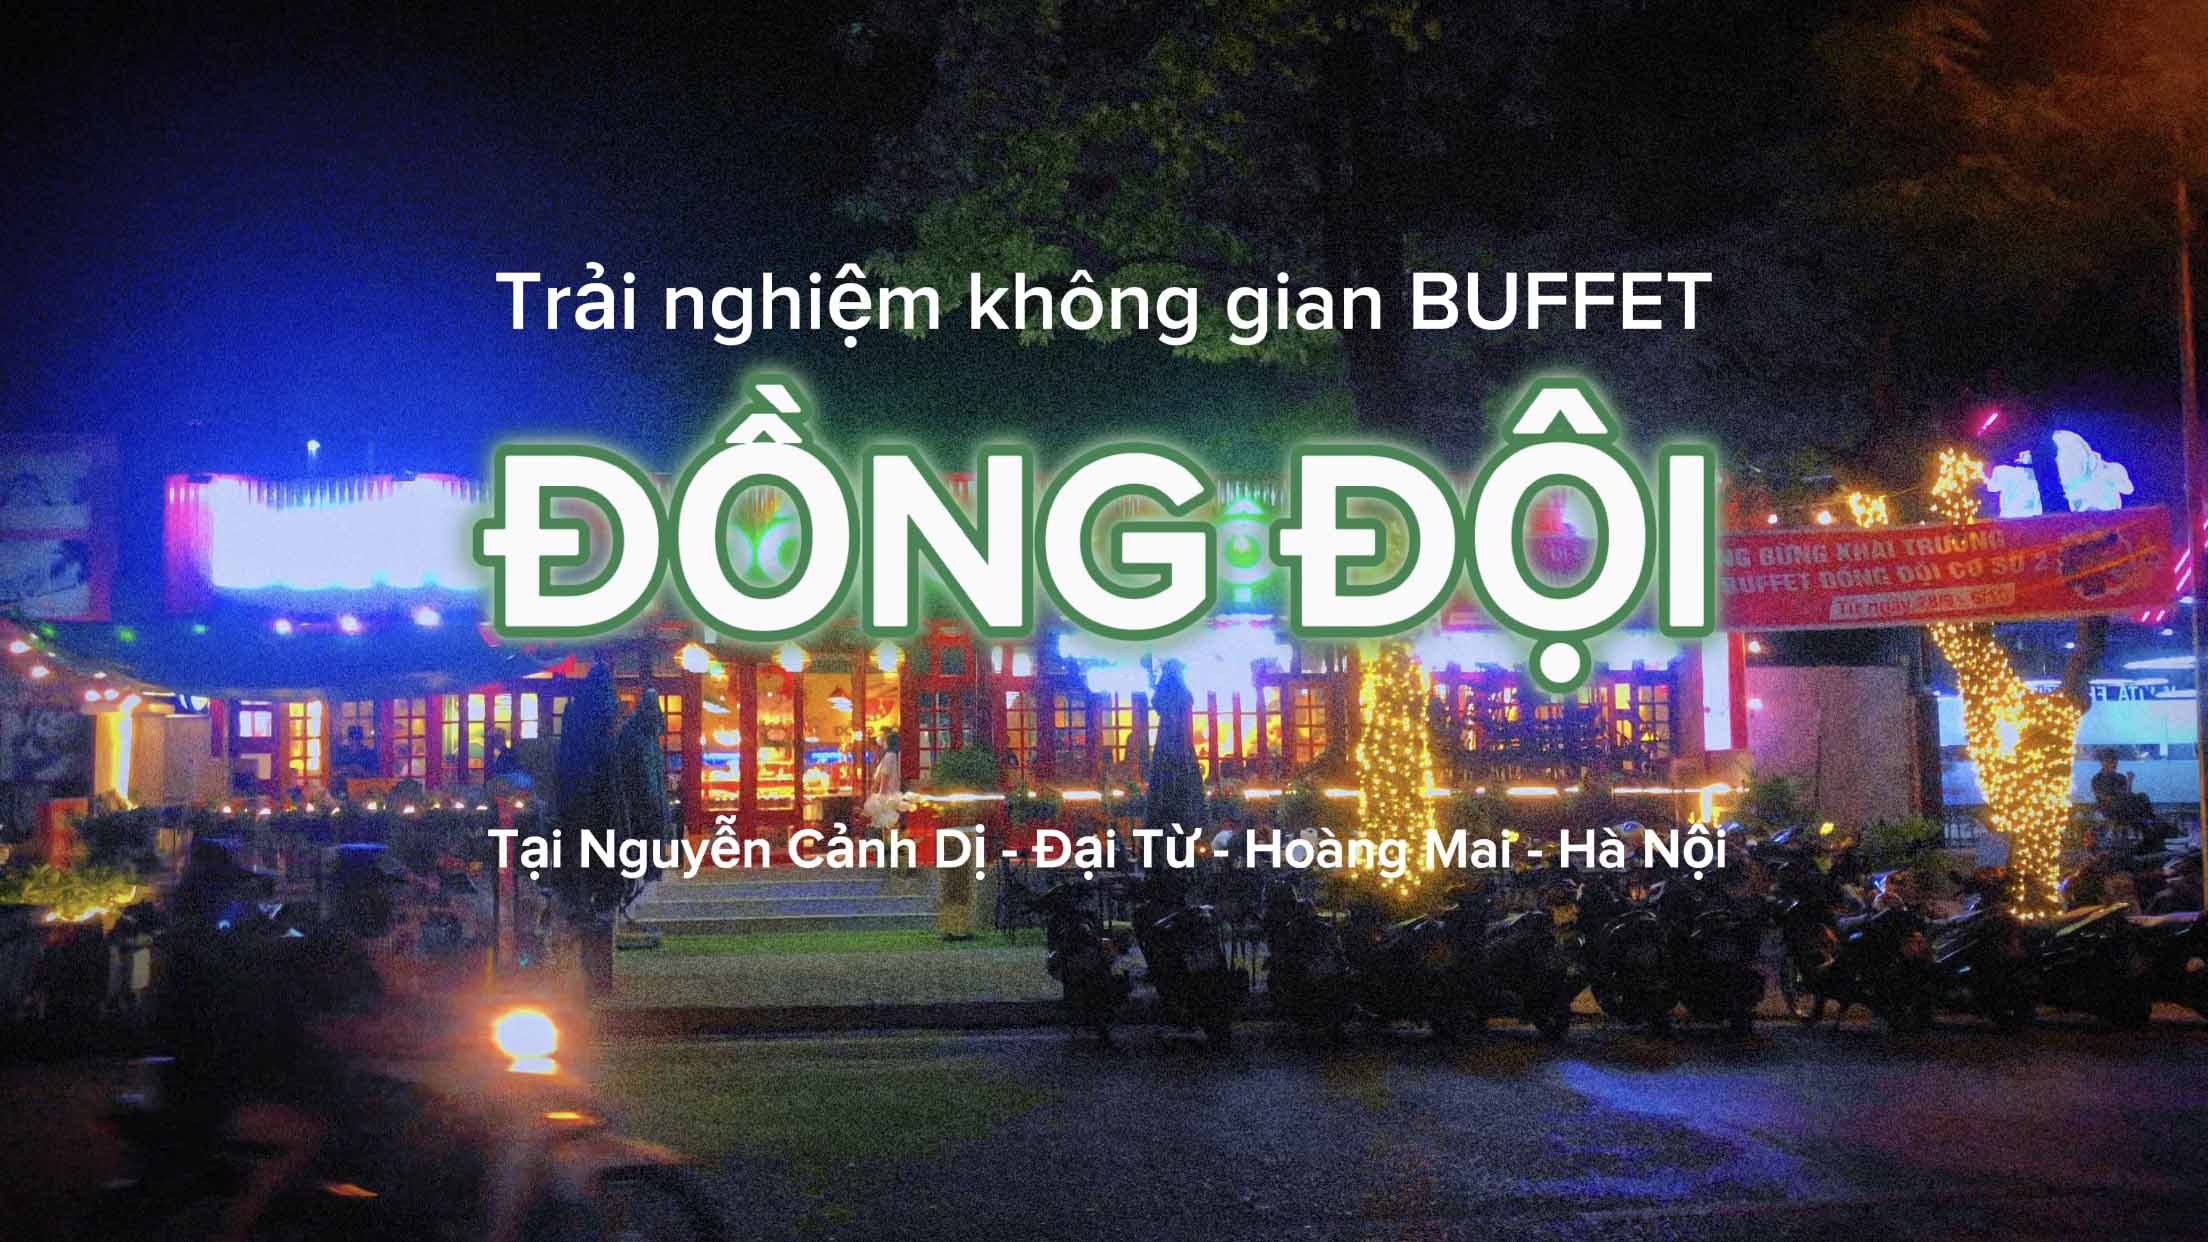 Trải nghiệm không gian Buffet ĐỒNG ĐỘI tại Nguyễn Cảnh Dị, Đại Từ, Hoàng Mai, Hà Nội